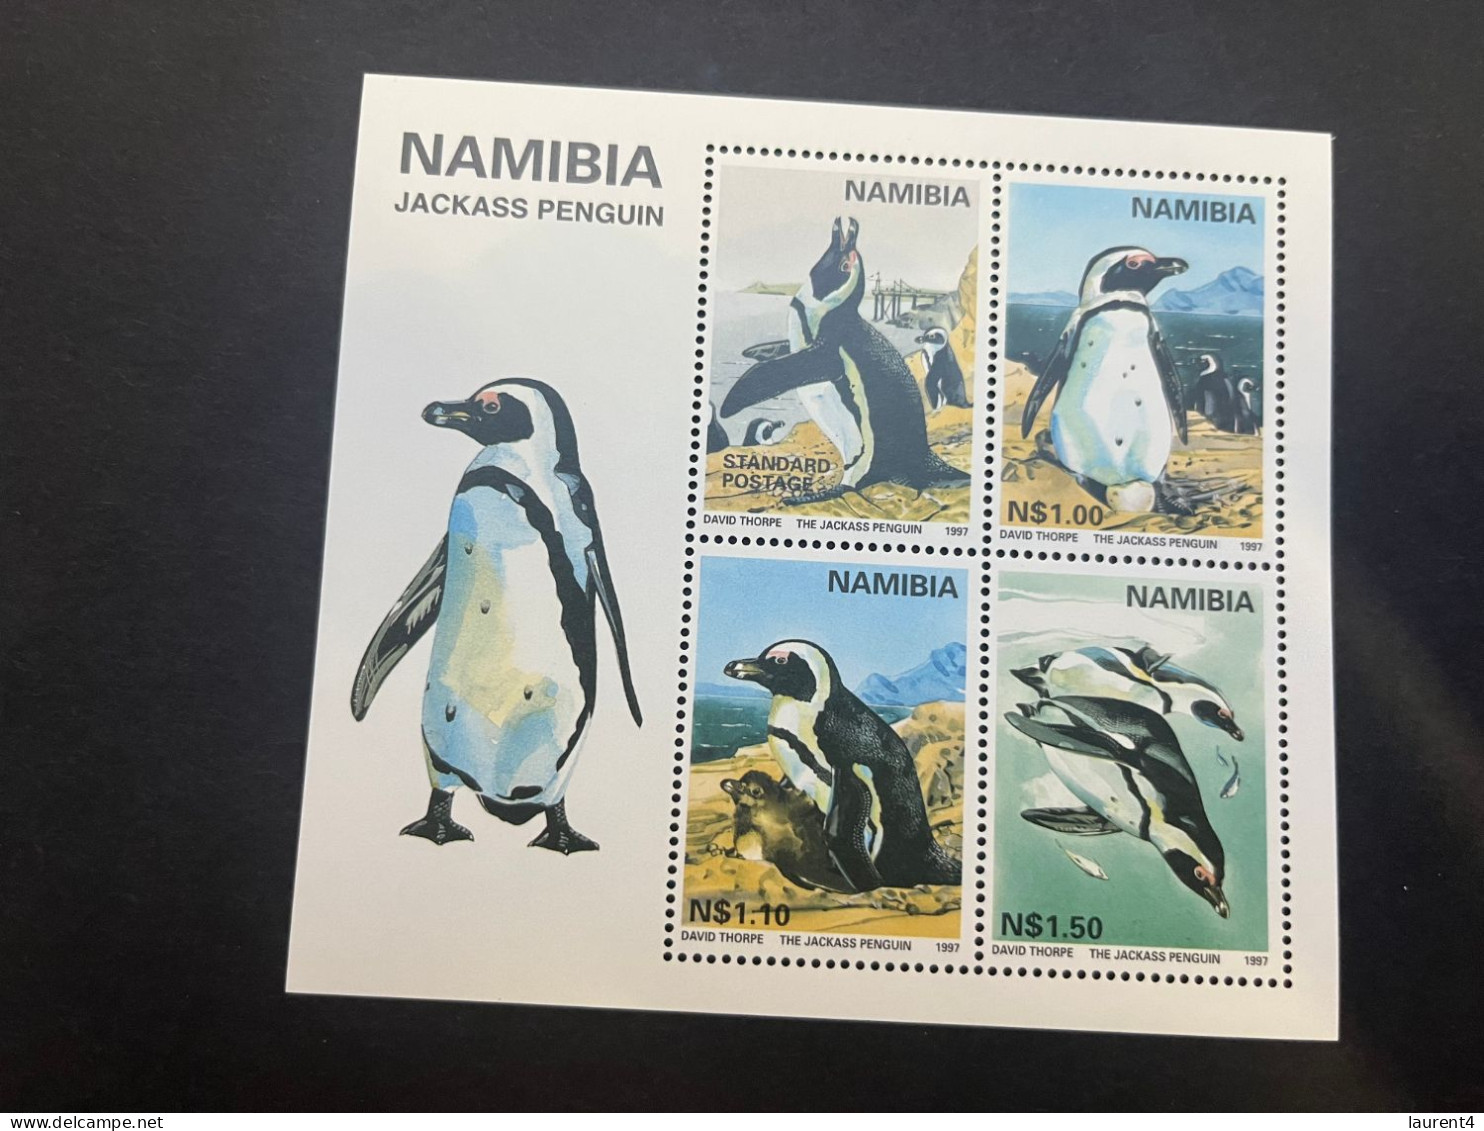 13-5-2024 (stamp) Mint (neuve) Mini-sheet - Namibia - Penguins - Penguins